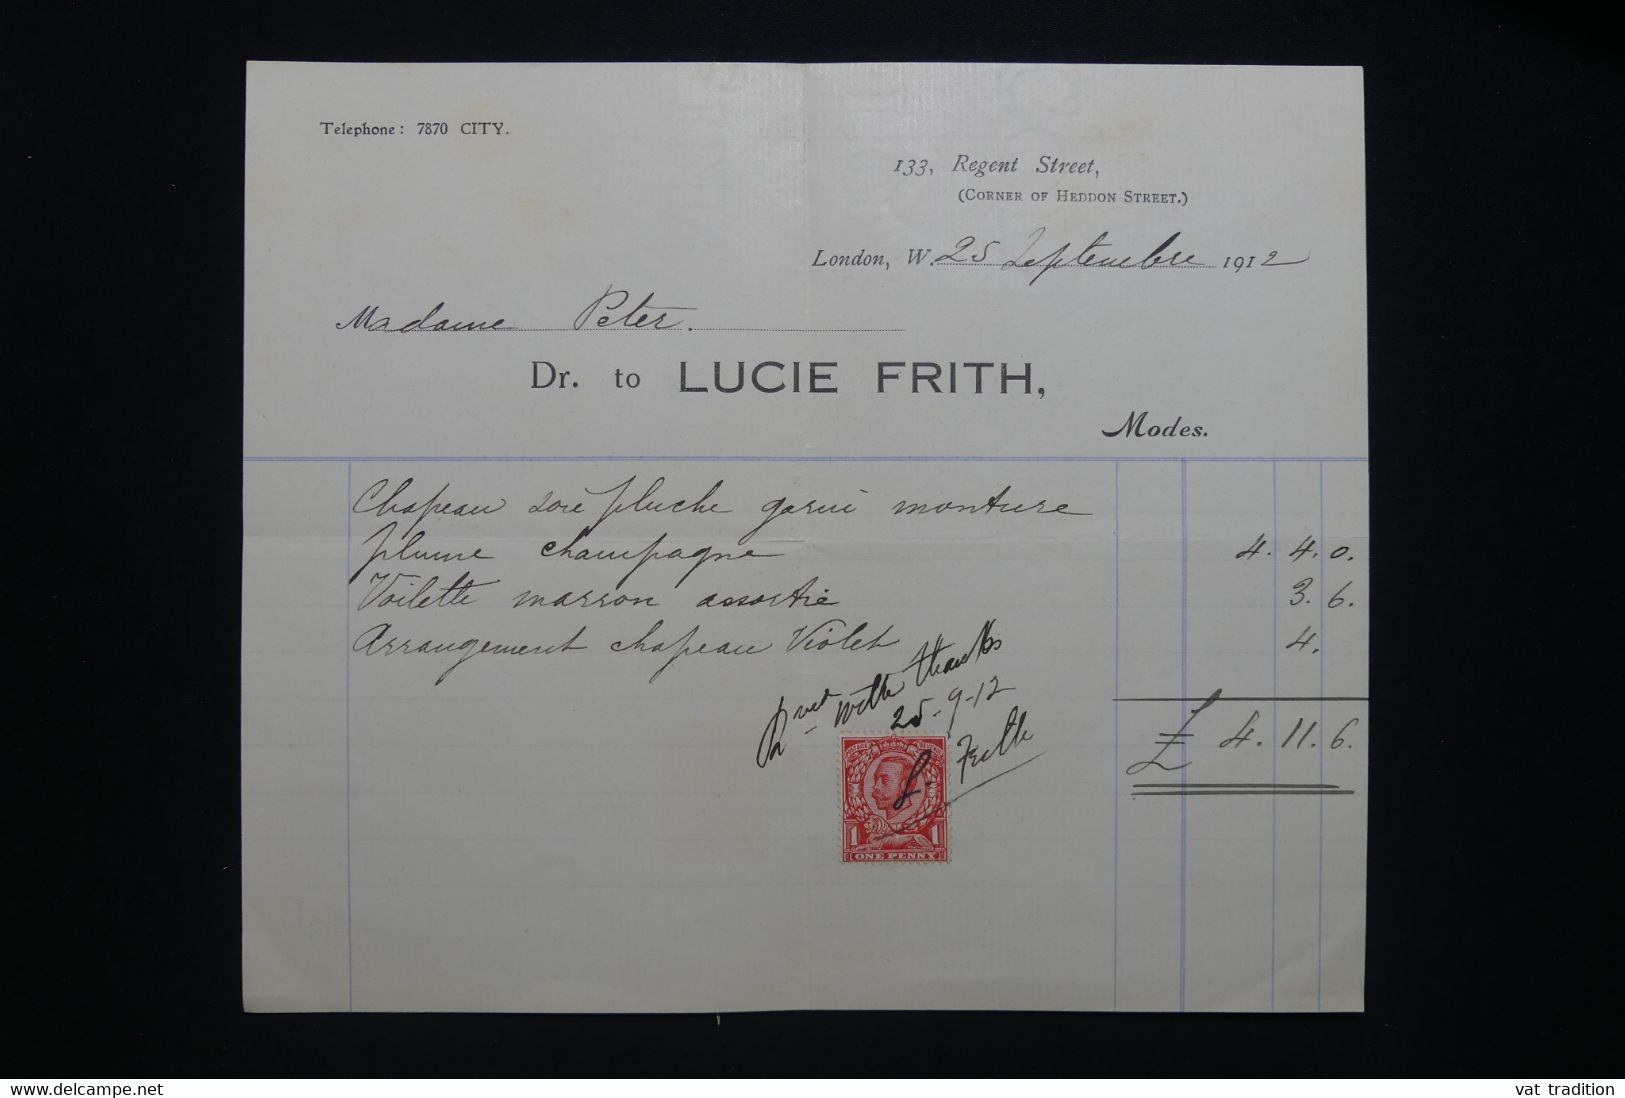 ROYAUME UNI - Timbre Posta à Usage Fiscal Sur Document De Londres En 1912  - L 98167 - Fiscali